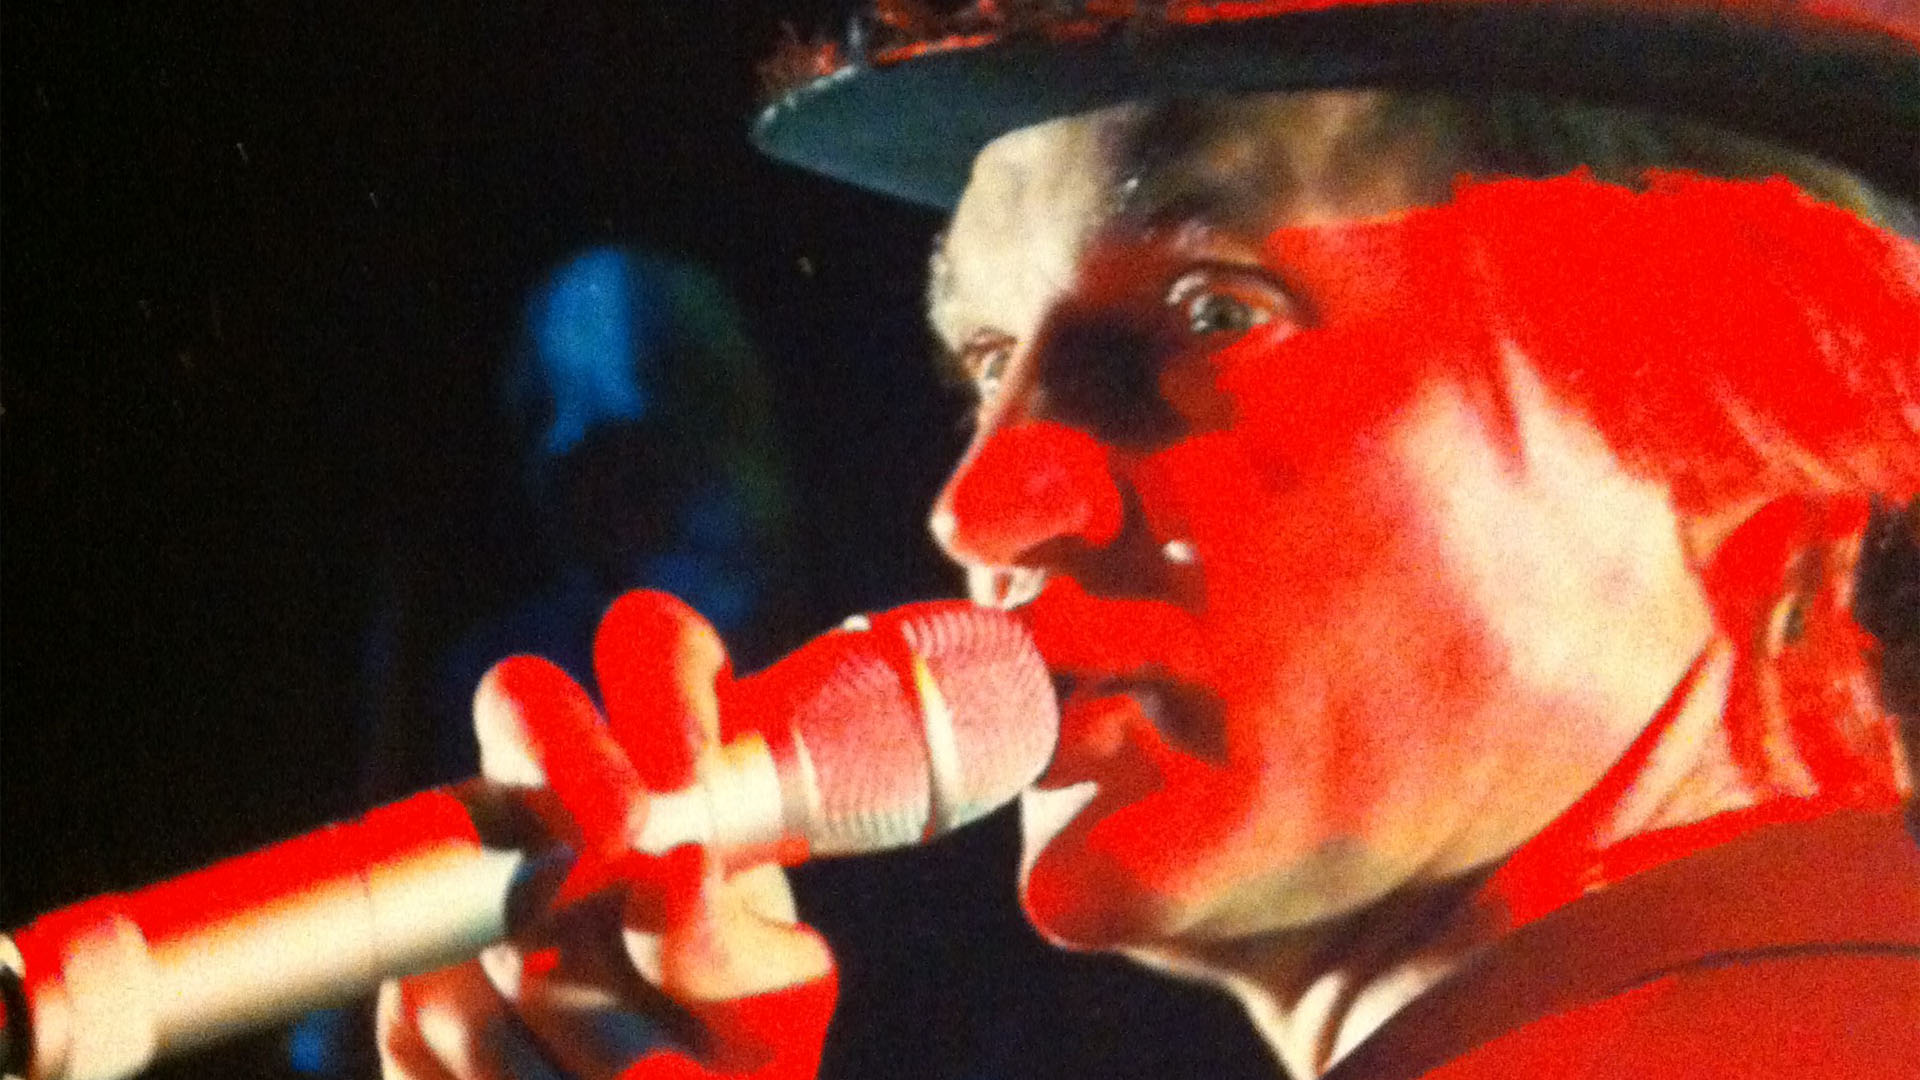 Närbild av skådespelaren Lennart Eriksson hållande i en mikrofon i starkt rött ljus.